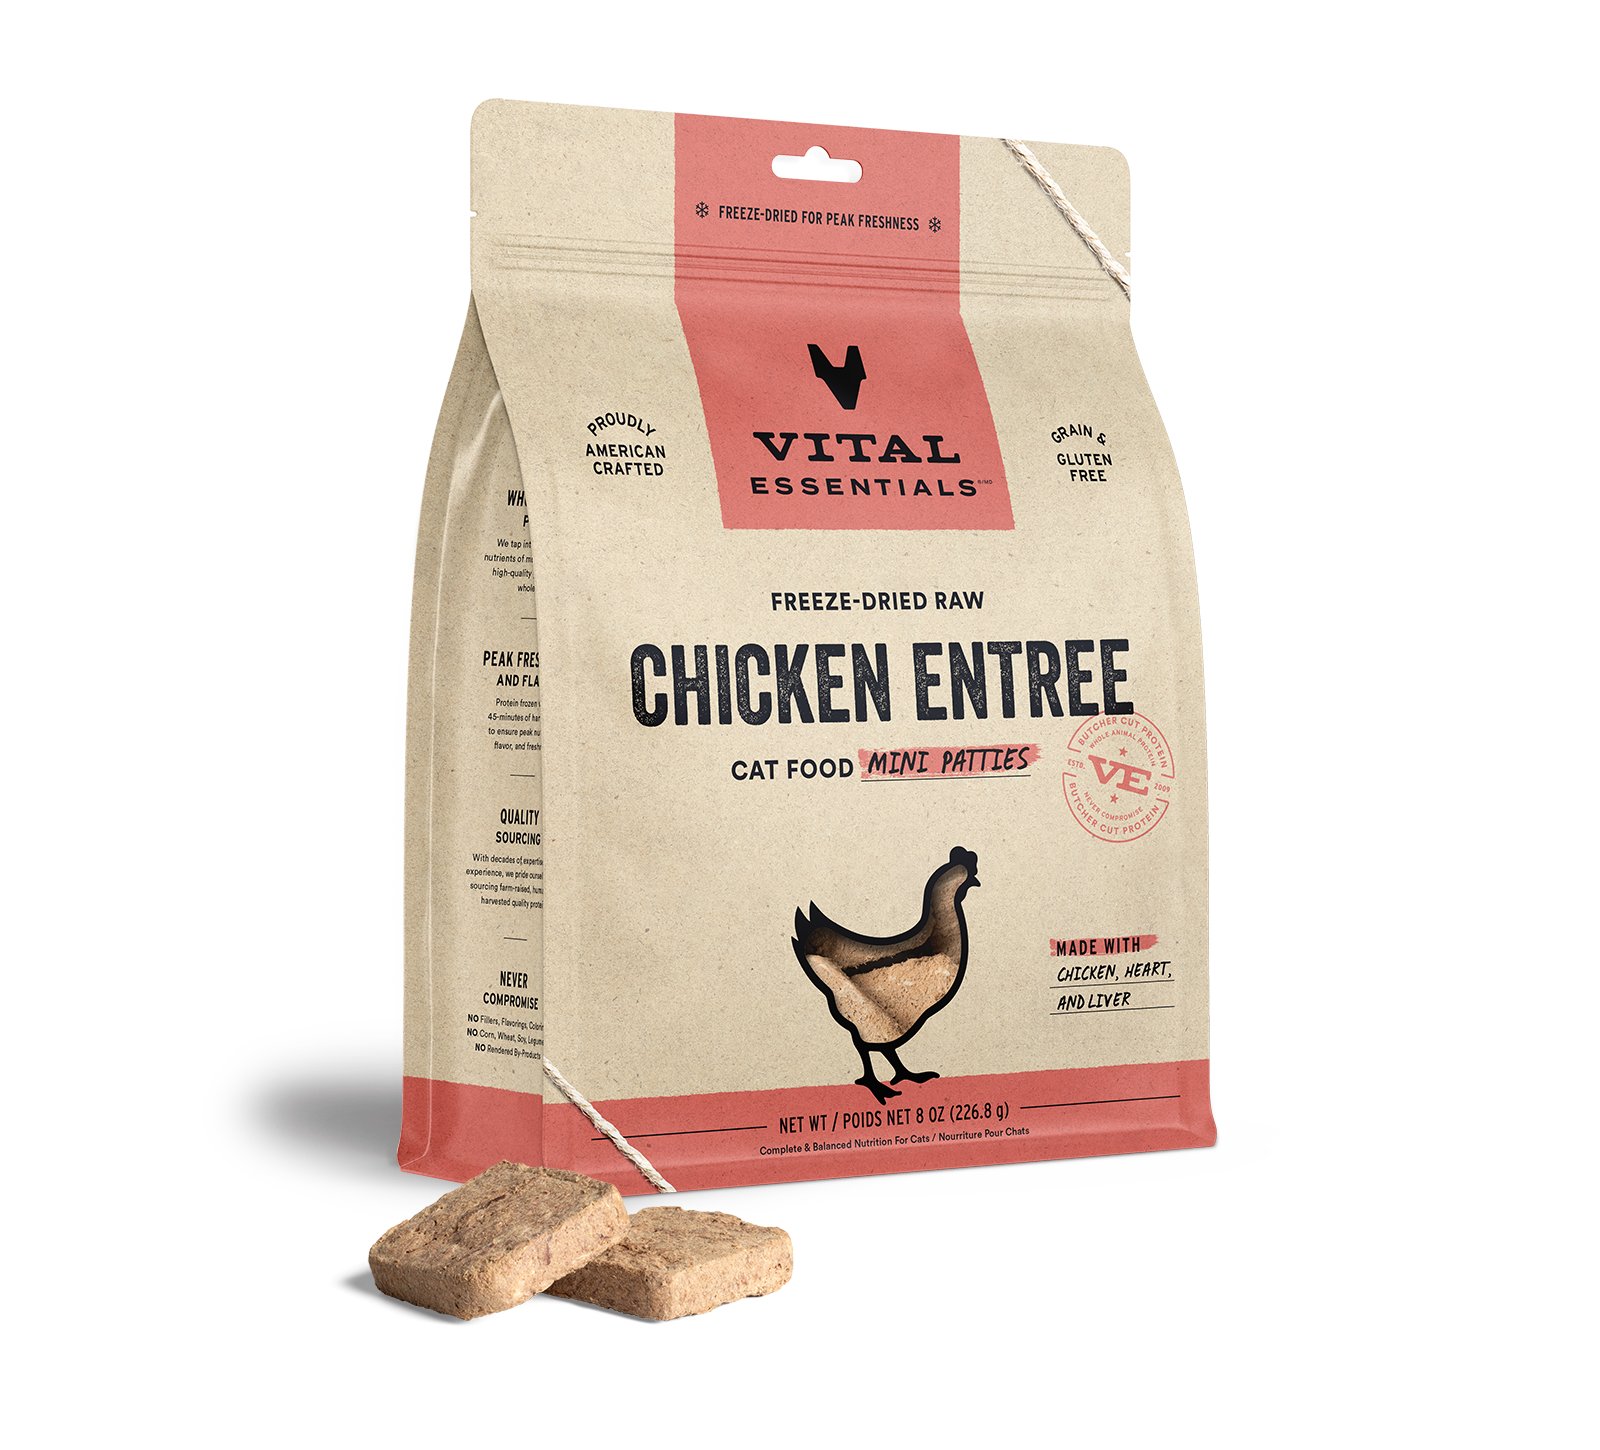 Vital Essentials Freeze-Dried Raw Chicken Entree Cat Food Mini Patties, 8 oz - Healing/First Aid